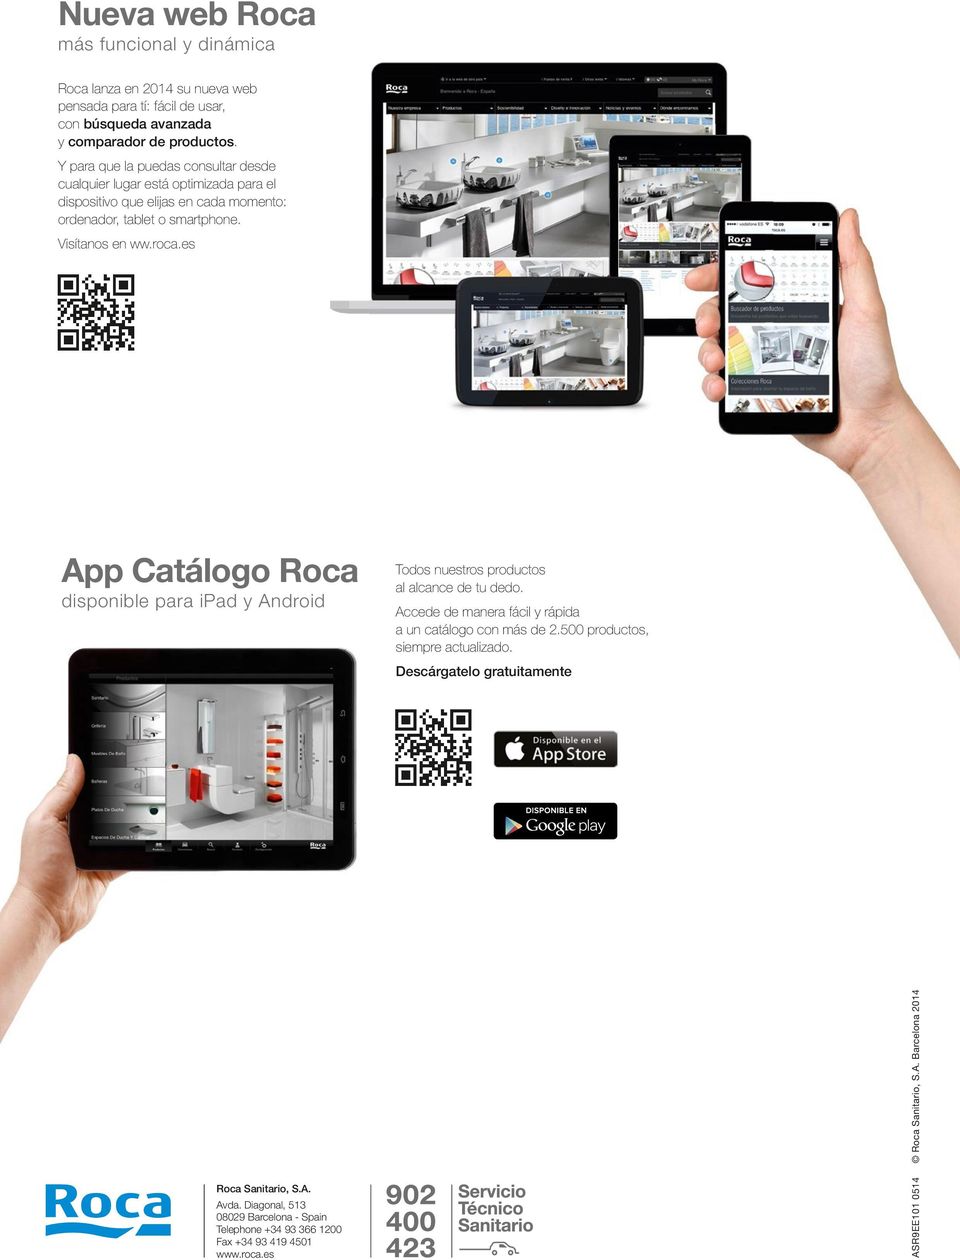 es App Catálogo Roca disponible para ipad y Android Todos nuestros productos al alcance de tu dedo. Accede de manera fácil y rápida a un catálogo con más de 2.